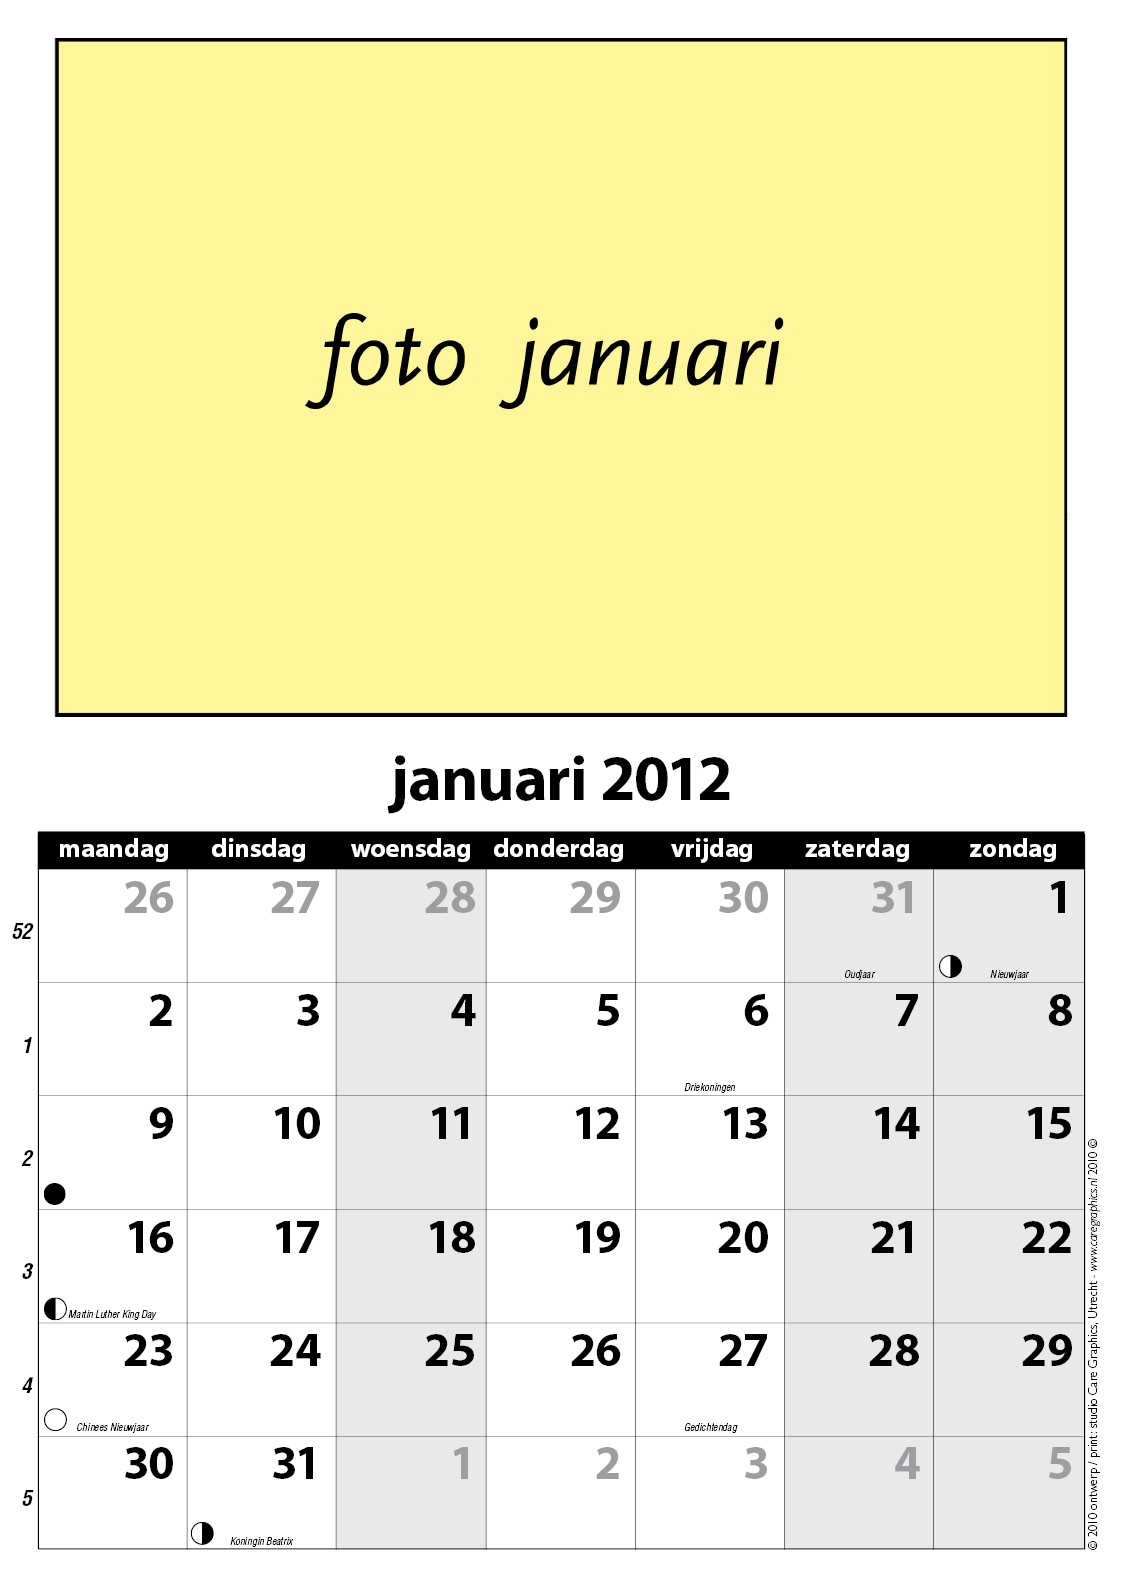 Uitgelezene je eigen (kantoor)kalender bij ons digitaal laten printen op A3 JX-08